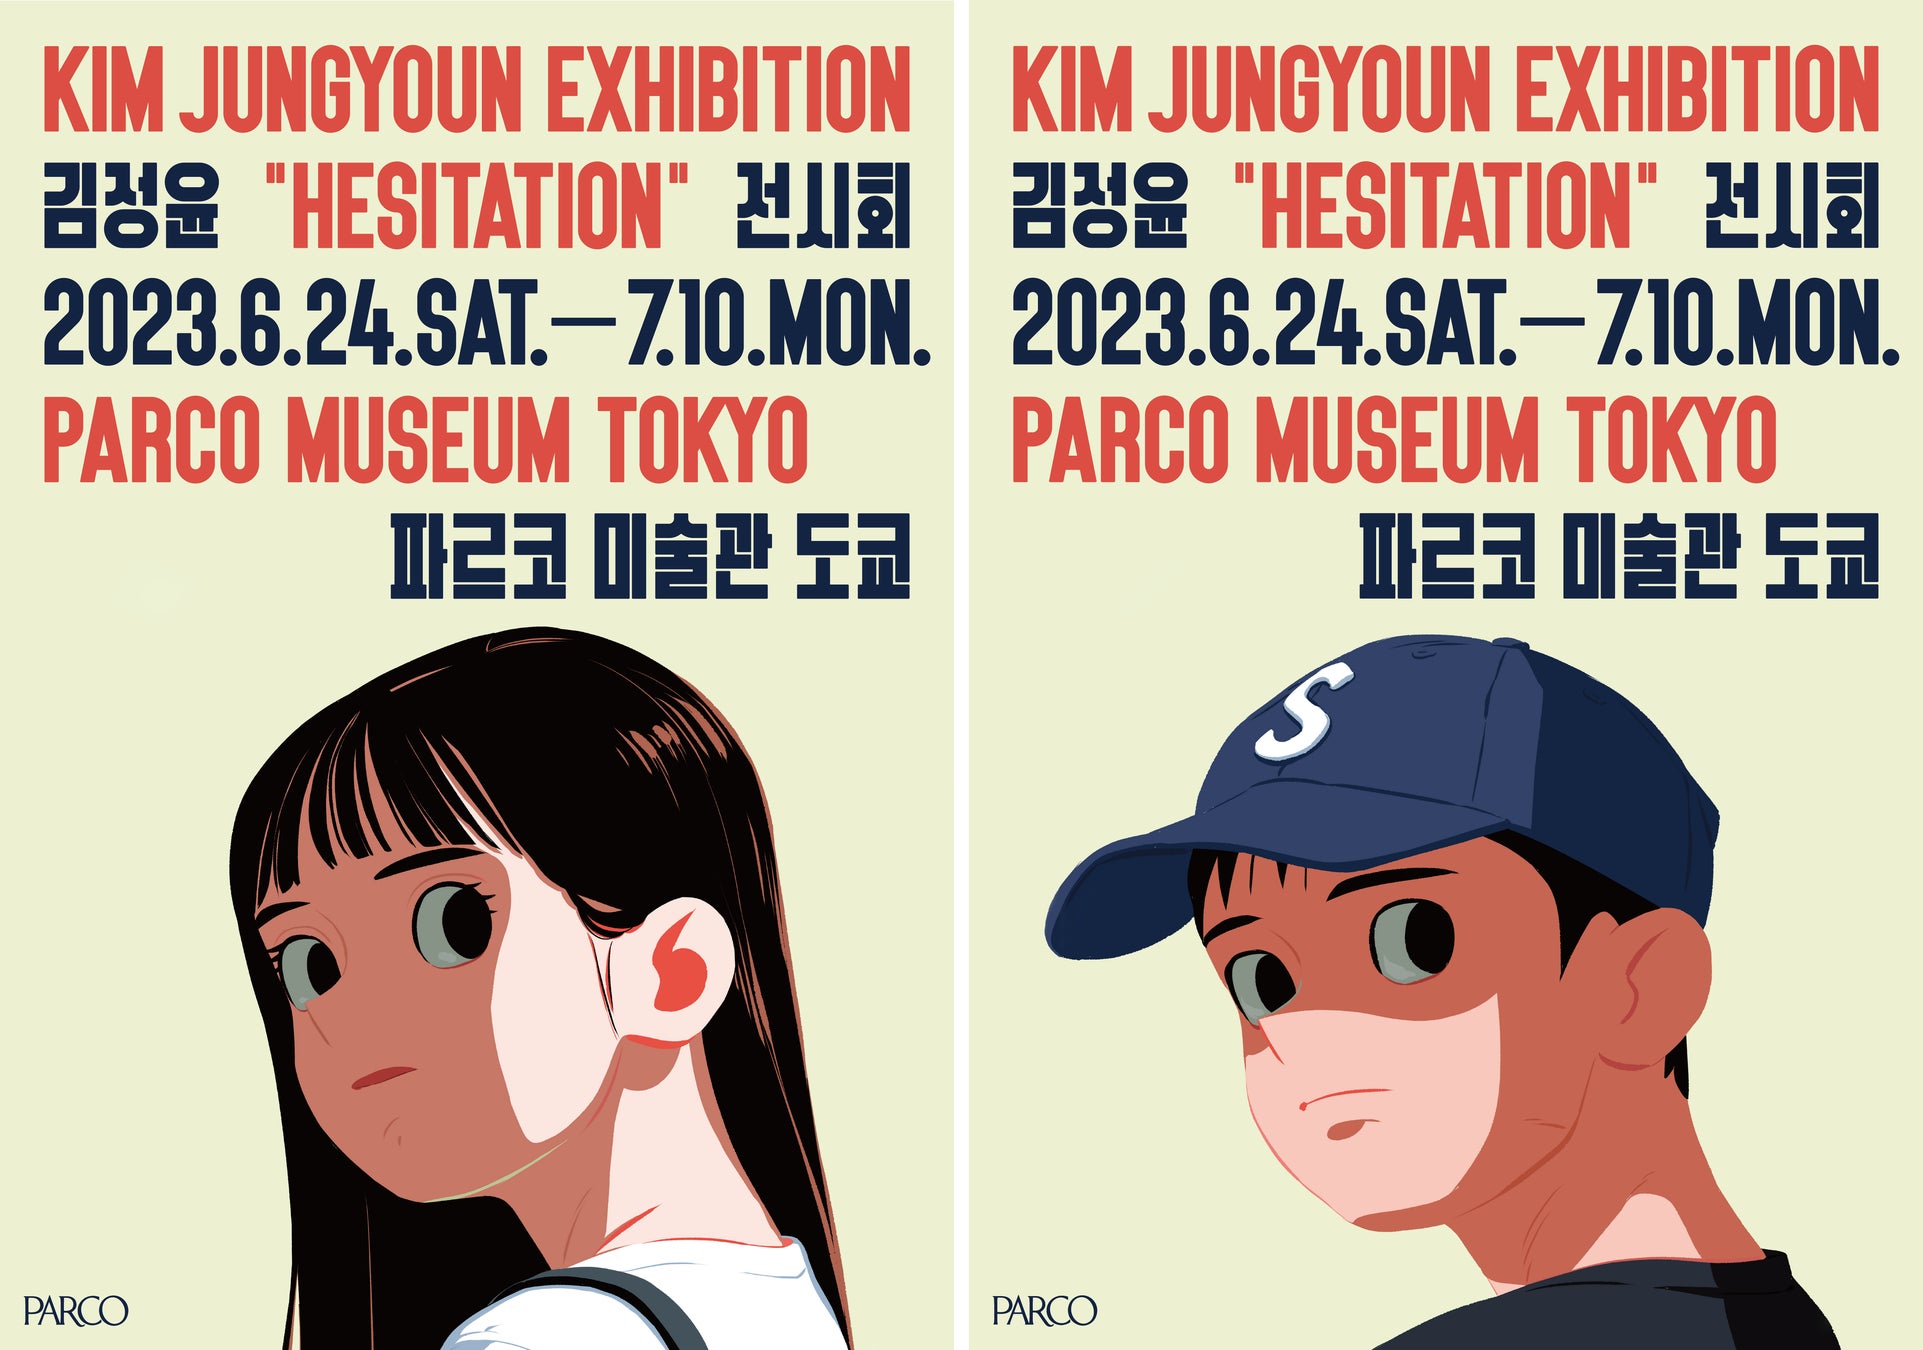 韓国アートシーンでの⼤注⽬アーティストKim Jungyoun(読み︓キム・ジョンユン)⽇本初となる個展“HESITATION” がSHIBUYA PARCOで開催決定︕